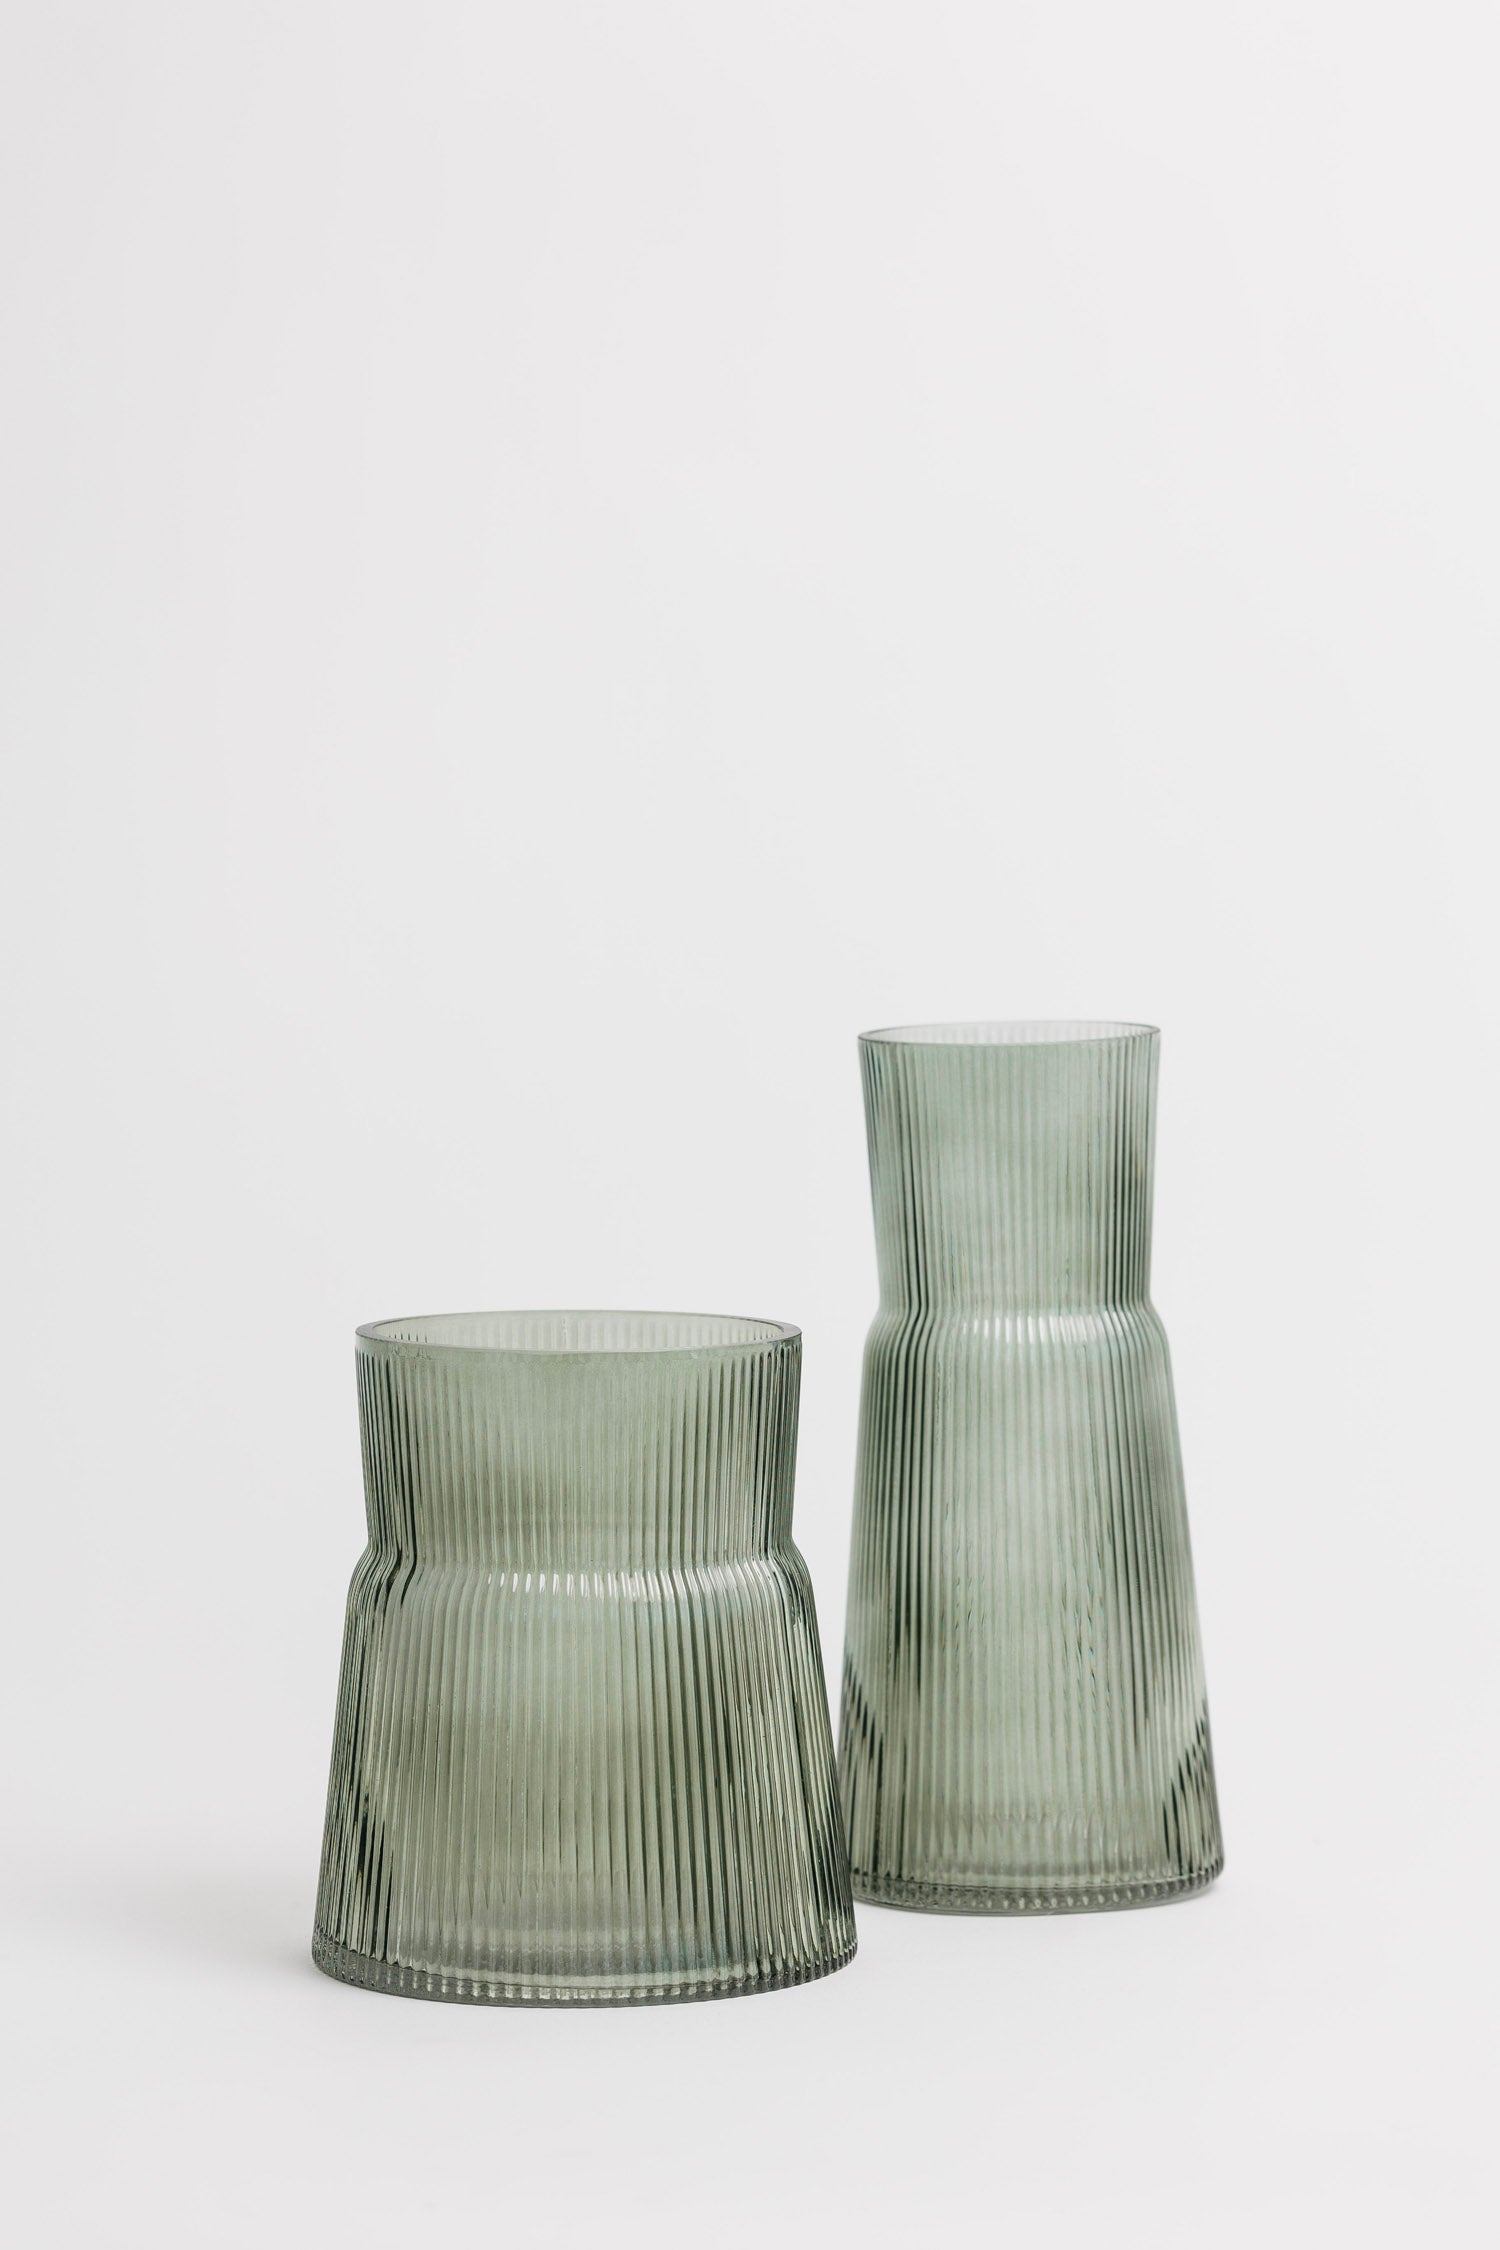 Plaza Ribbed Vase - 2 Styles